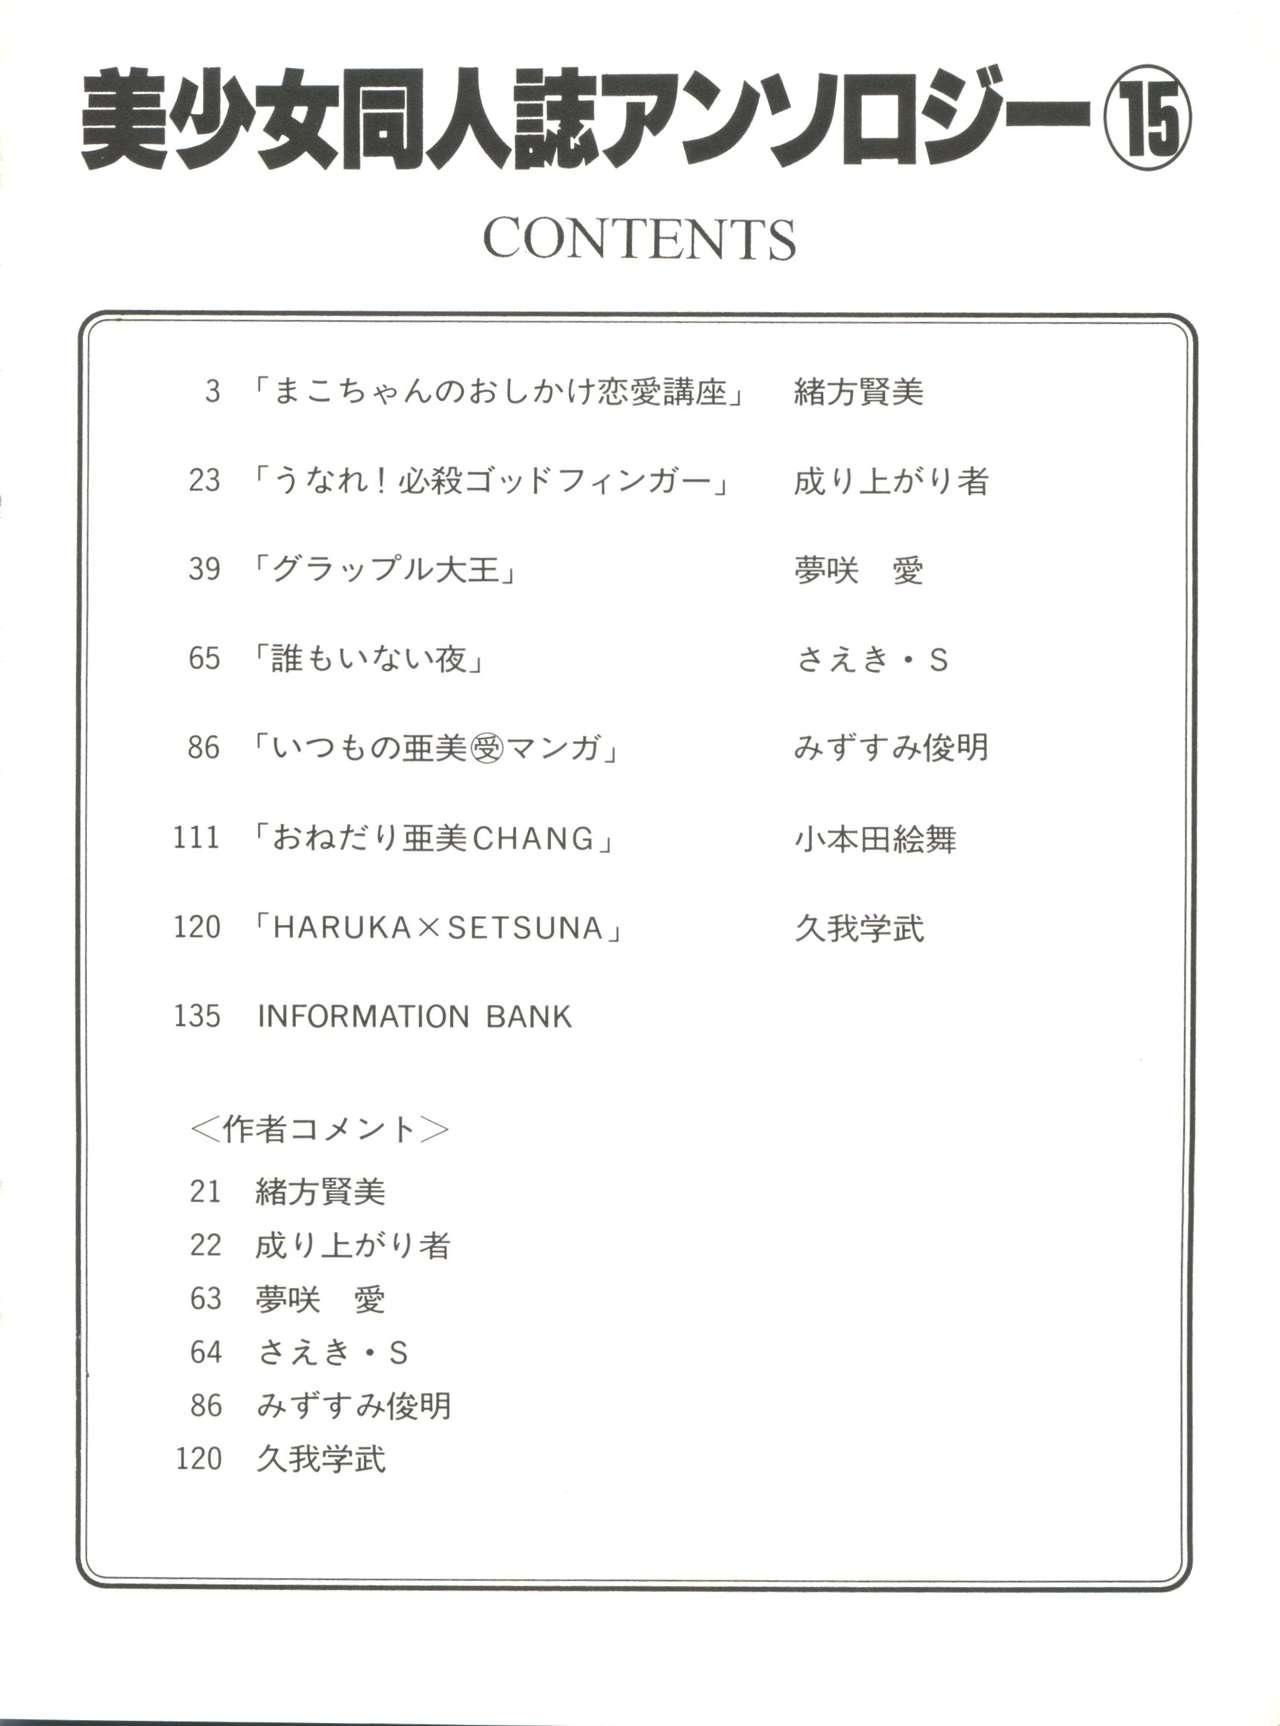 Str8 Bishoujo Doujinshi Anthology 15 - Moon Paradise 9 Tsuki no Rakuen - Sailor moon Hard - Page 4